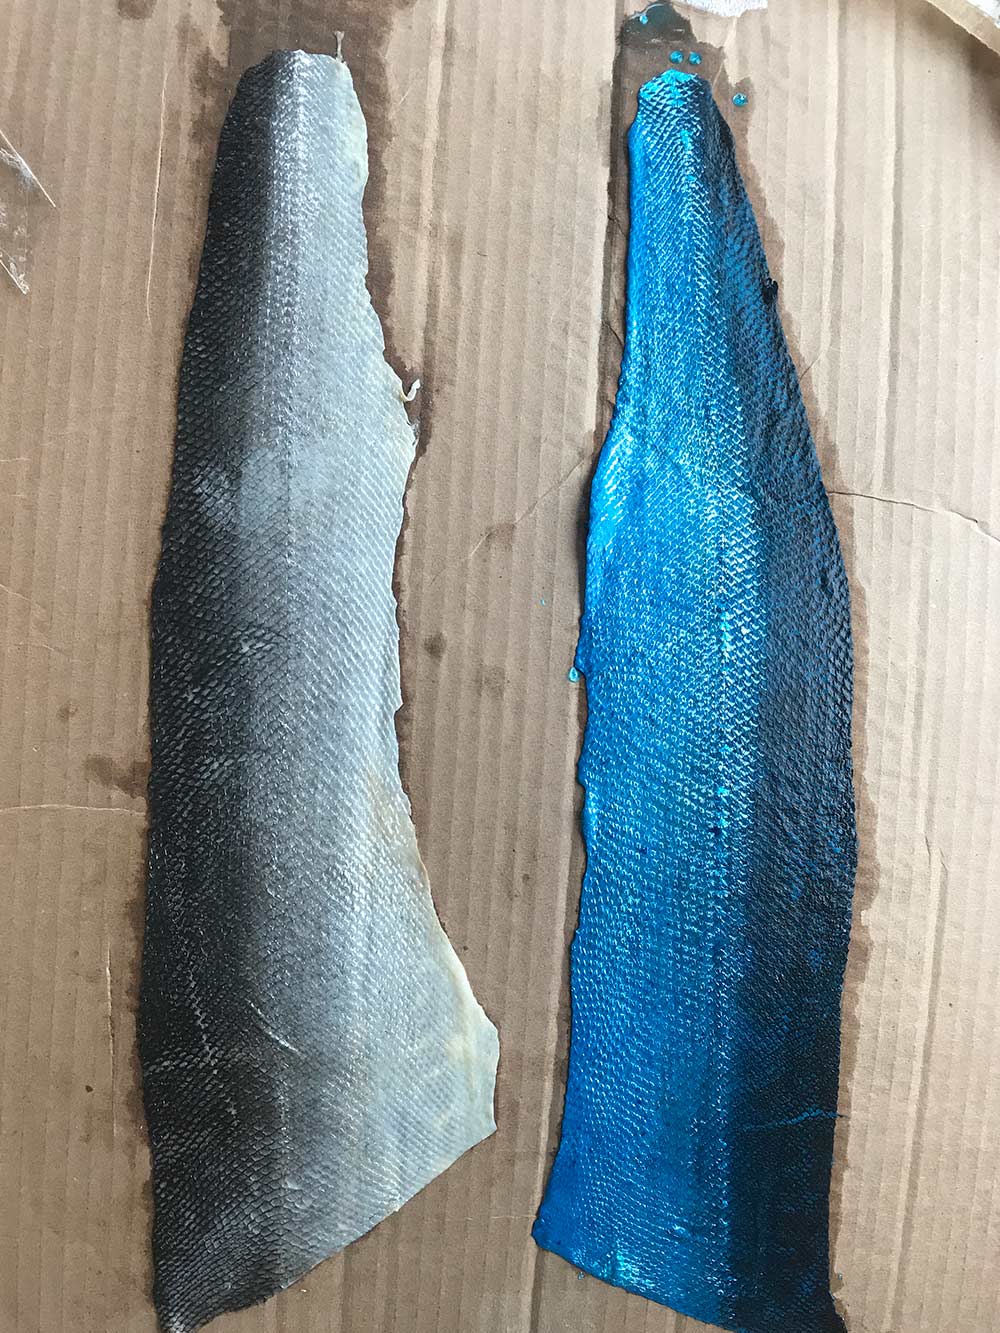 Fish skins